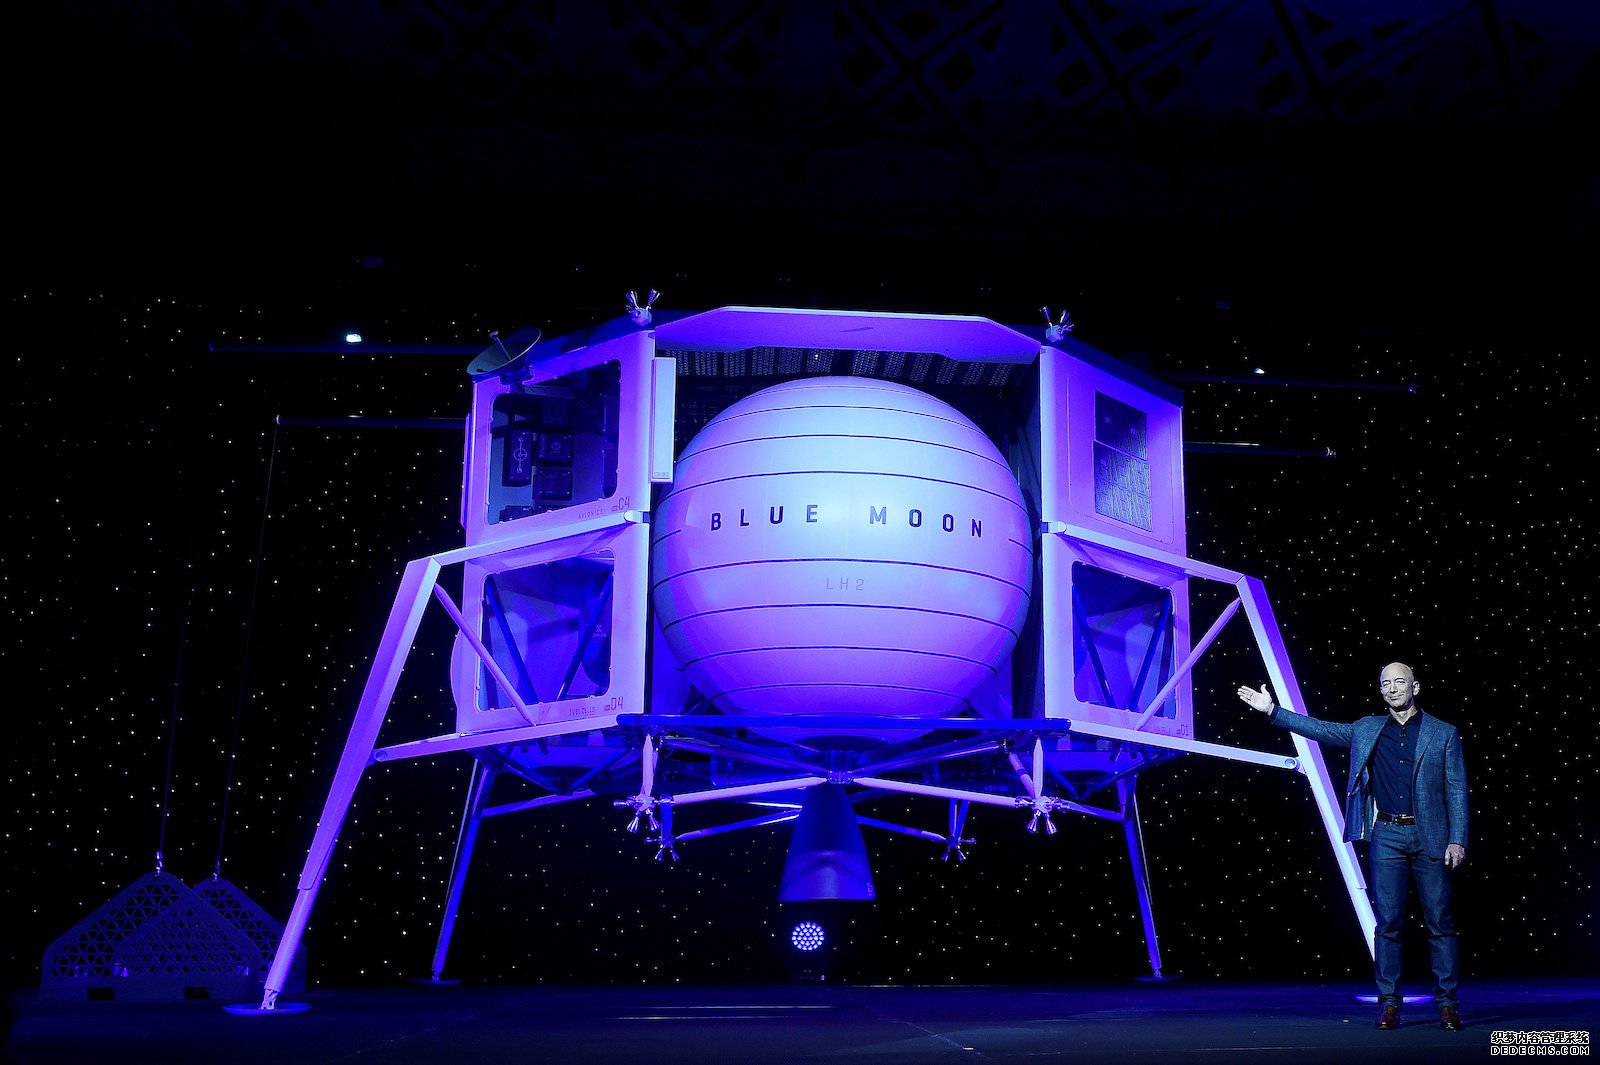 蓝冠代理:Blue Origin 对 SpaceX 独揽 NASA Artemis 合约一事提出异议